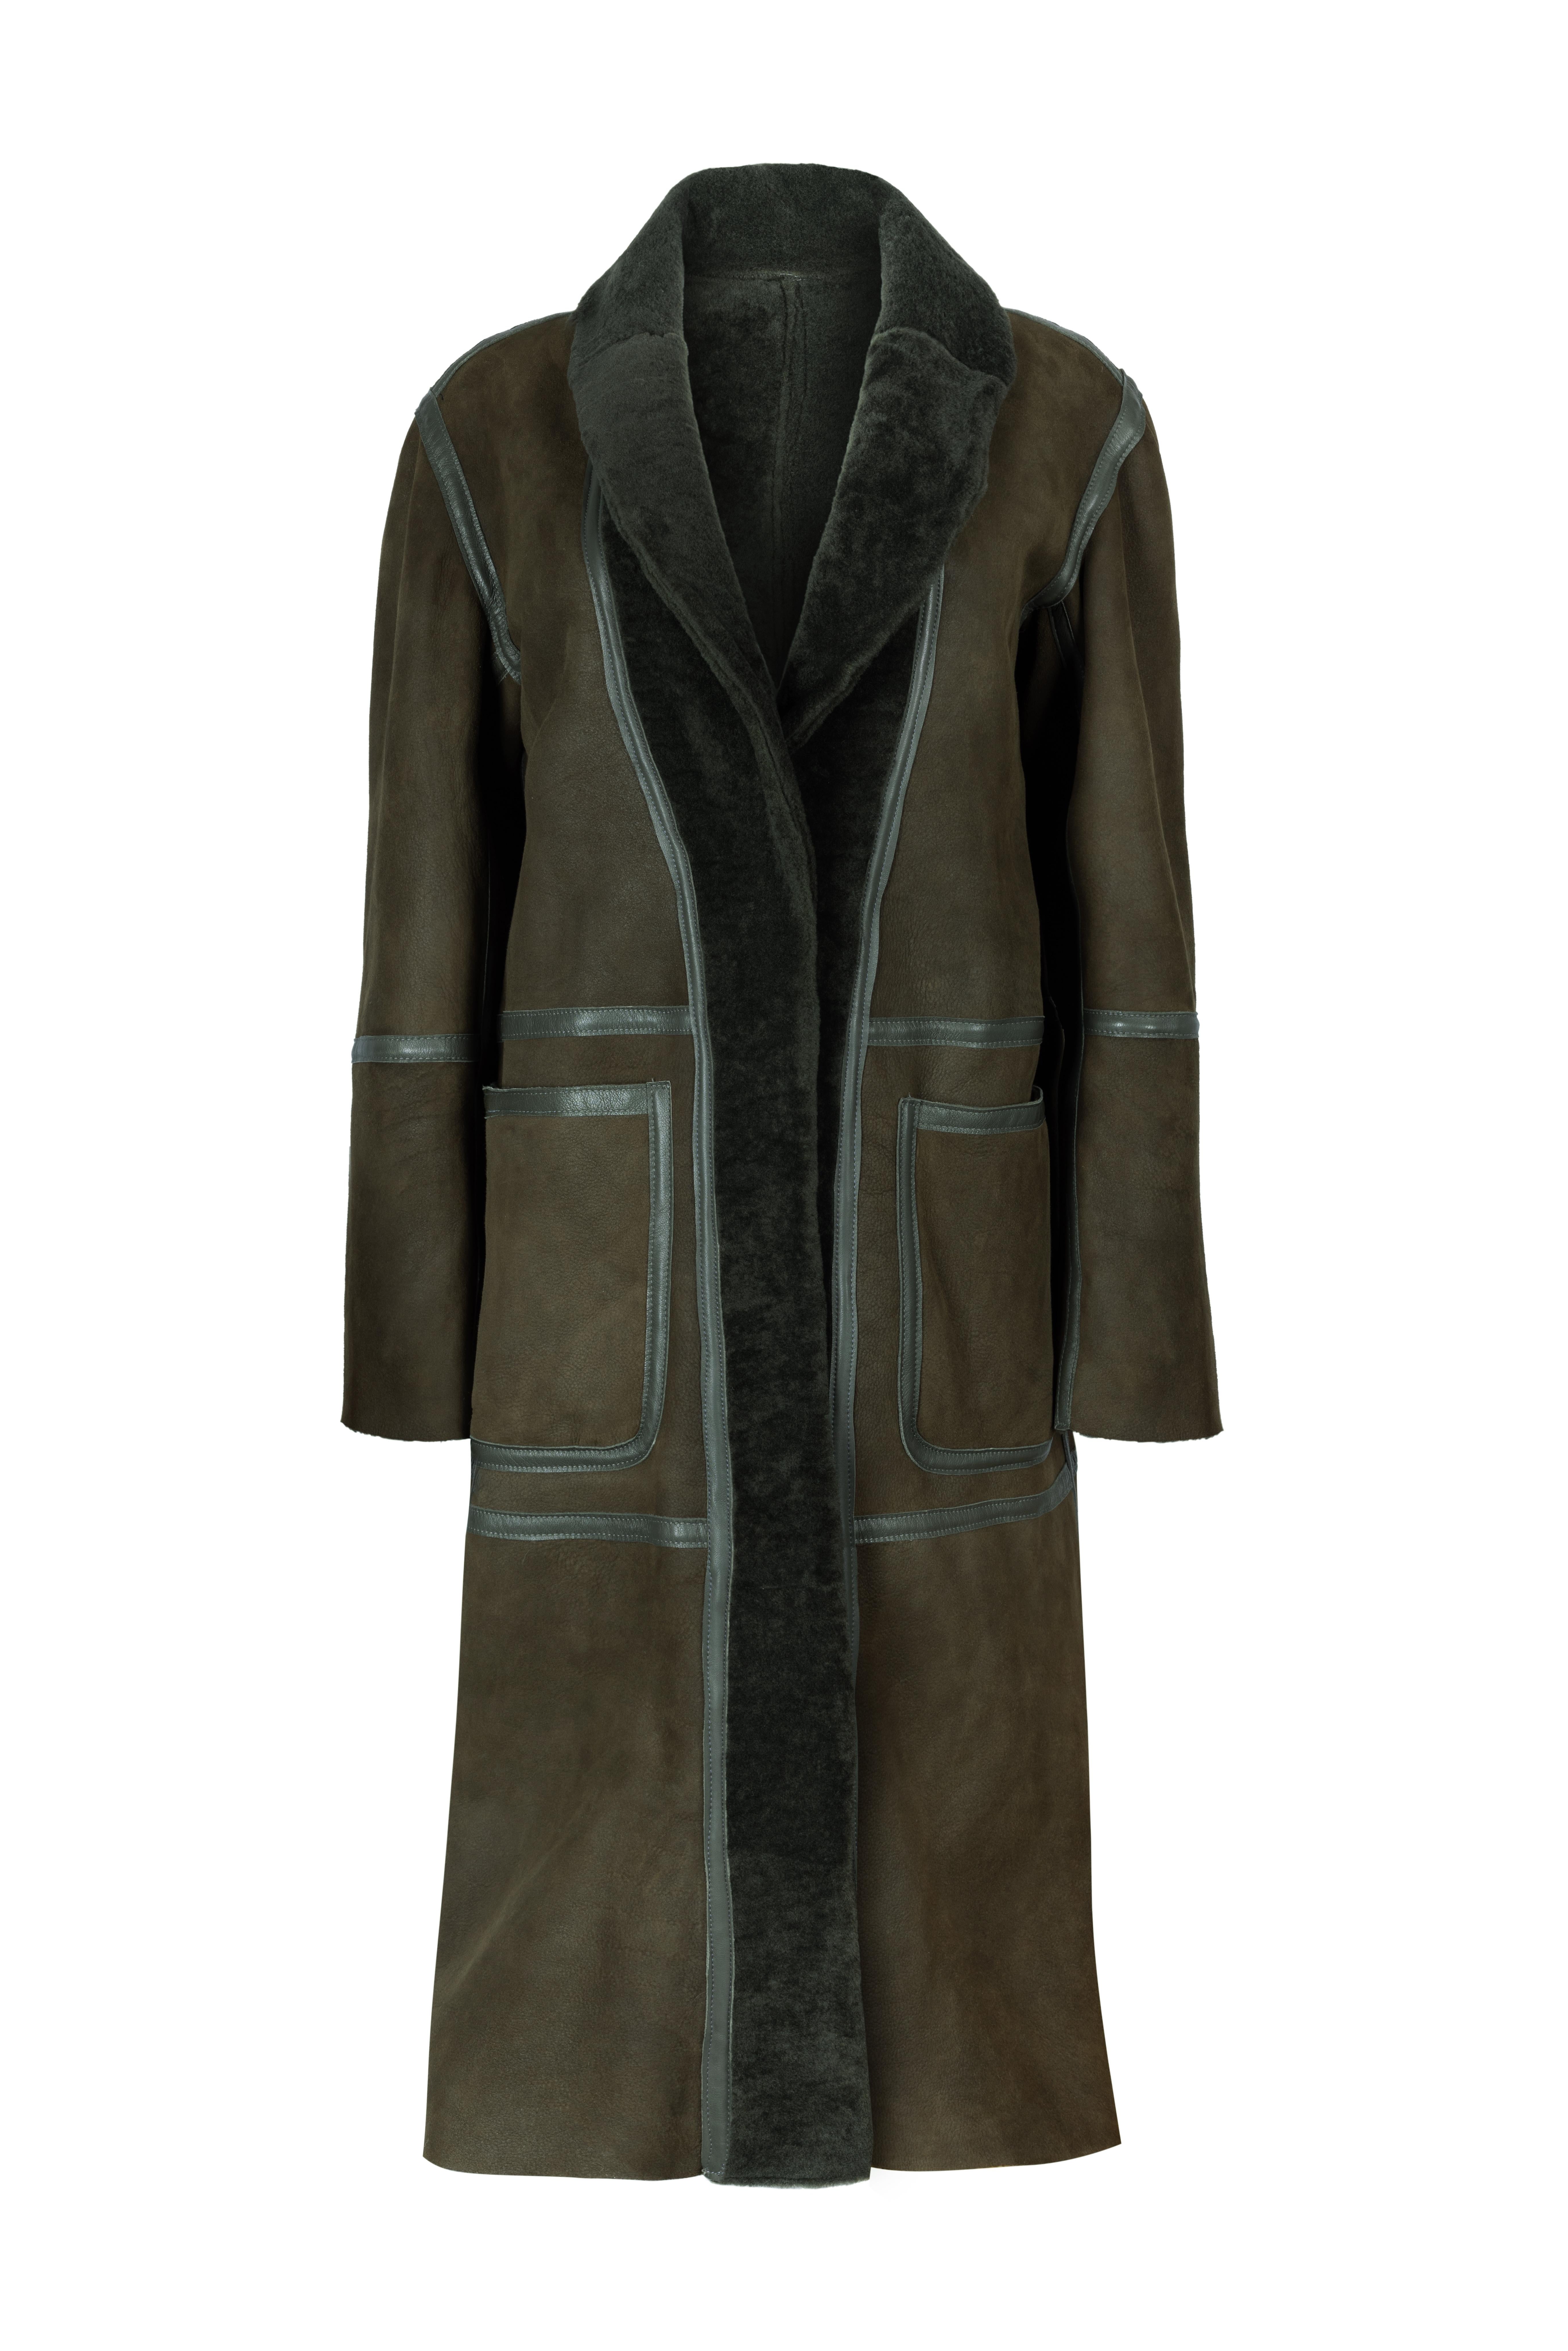 Women's Verheyen London Reversible Shearling Coat in Khaki Green size uk 8-10 For Sale